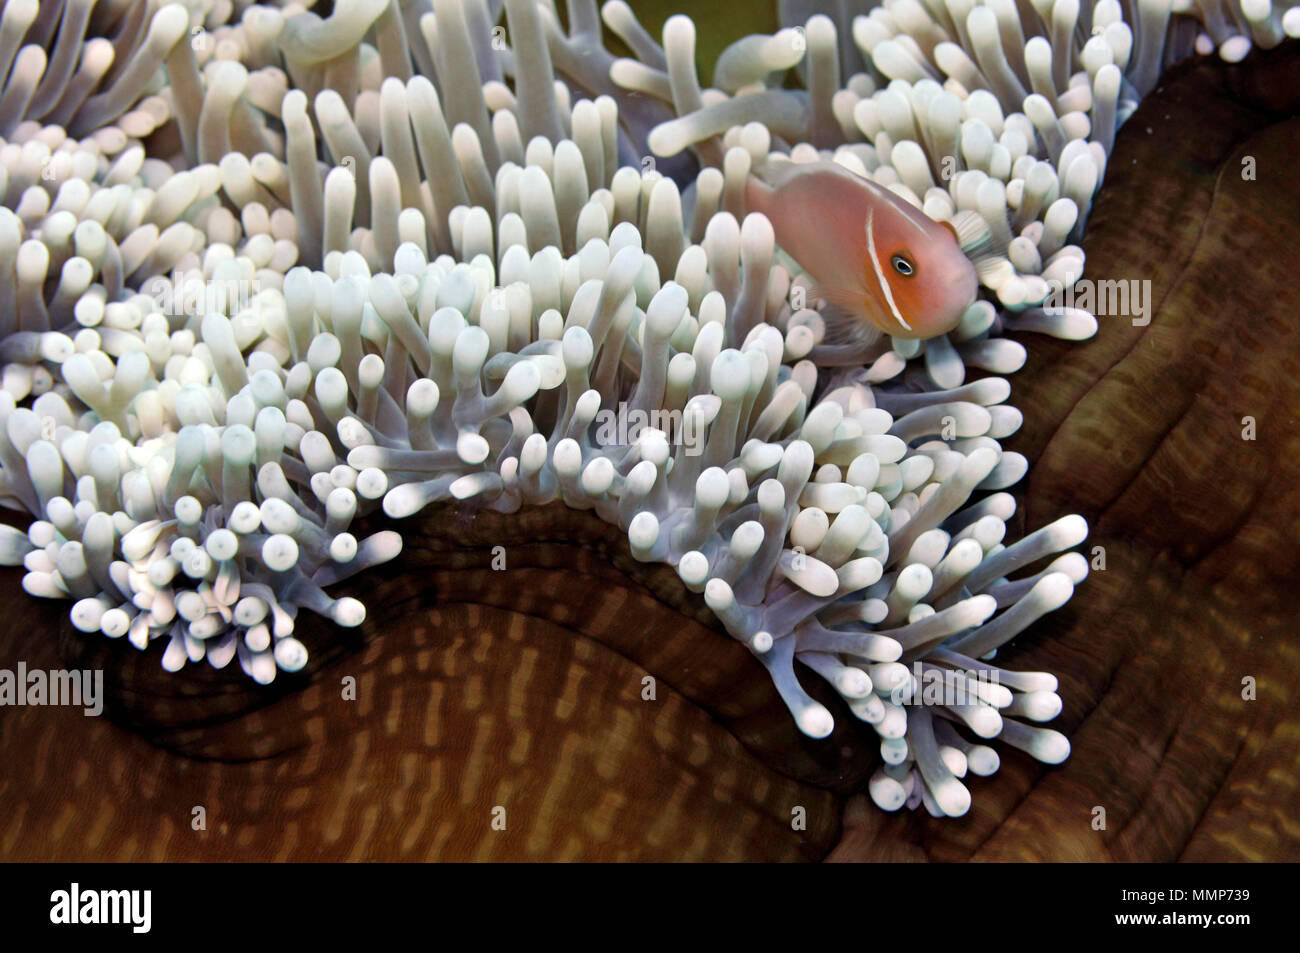 Rosa, anemonefish Amphiprion perideraion, nuota nel suo magnifico mare anemone, Heteractis magnifica, Pohnpei, Stati Federati di Micronesia Foto Stock